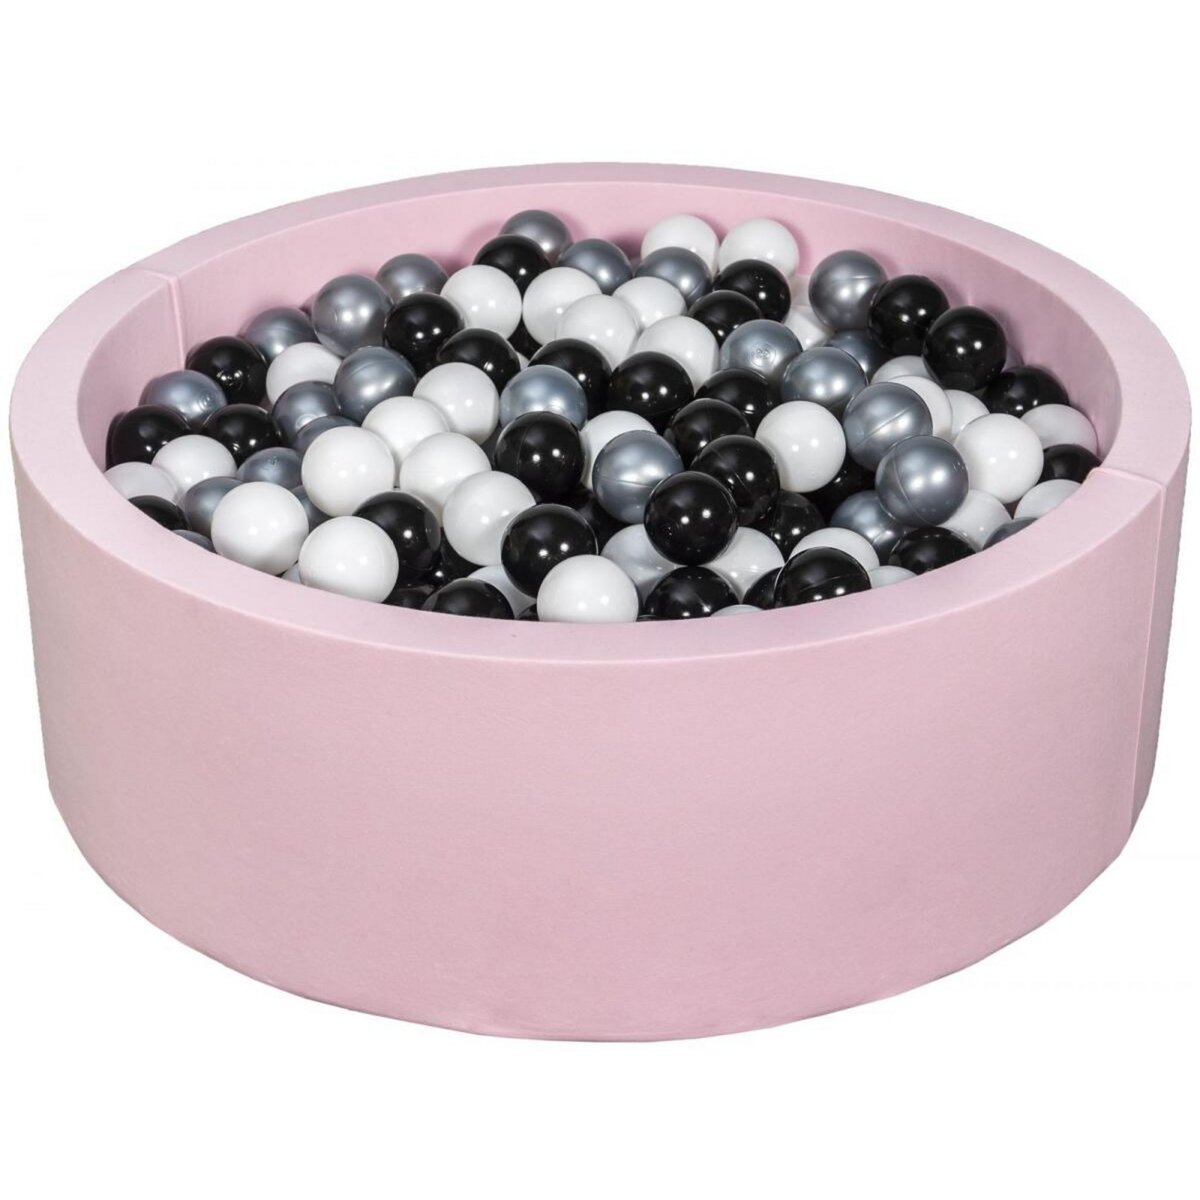  Piscine à balles Aire de jeu + 450 balles rose noir, blanc, argent